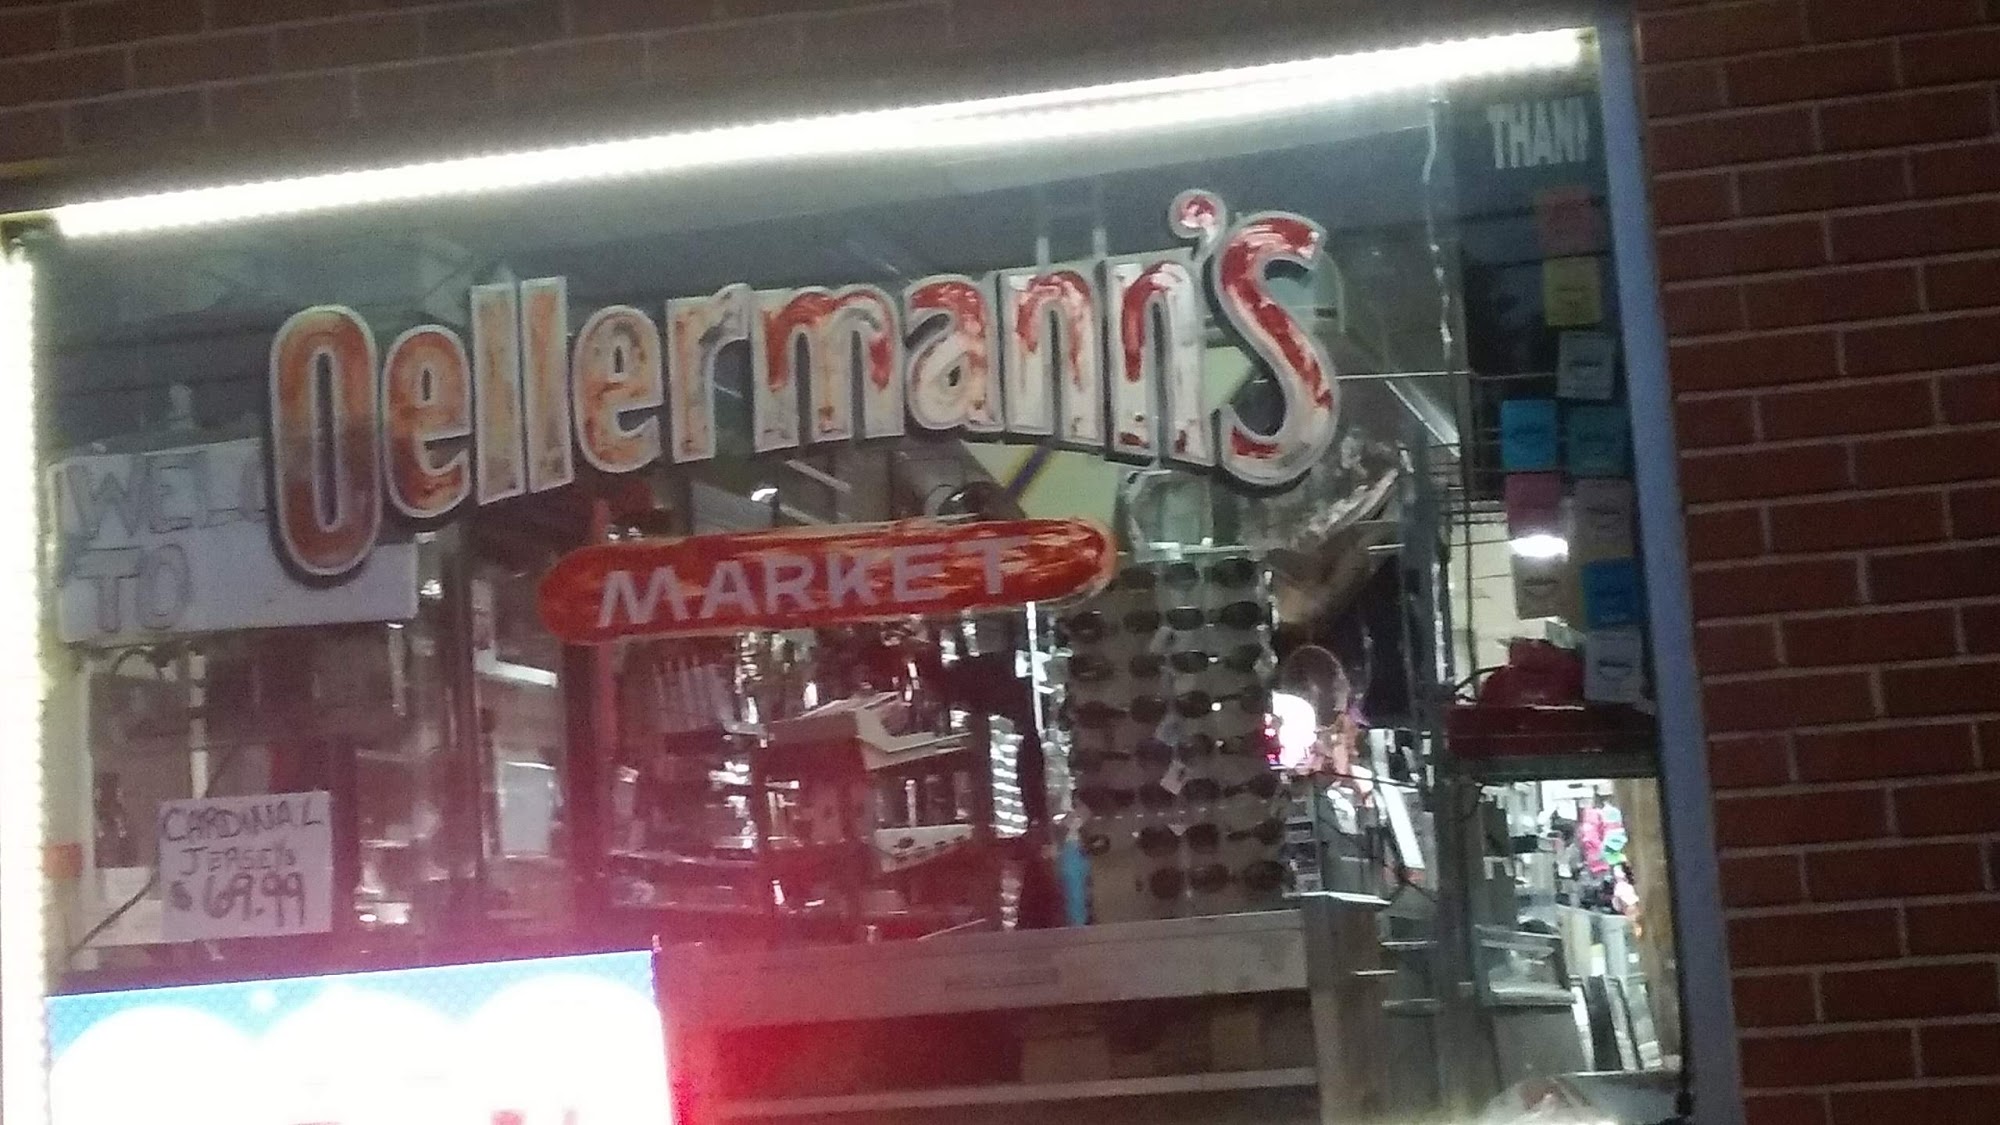 Oellermann's Market